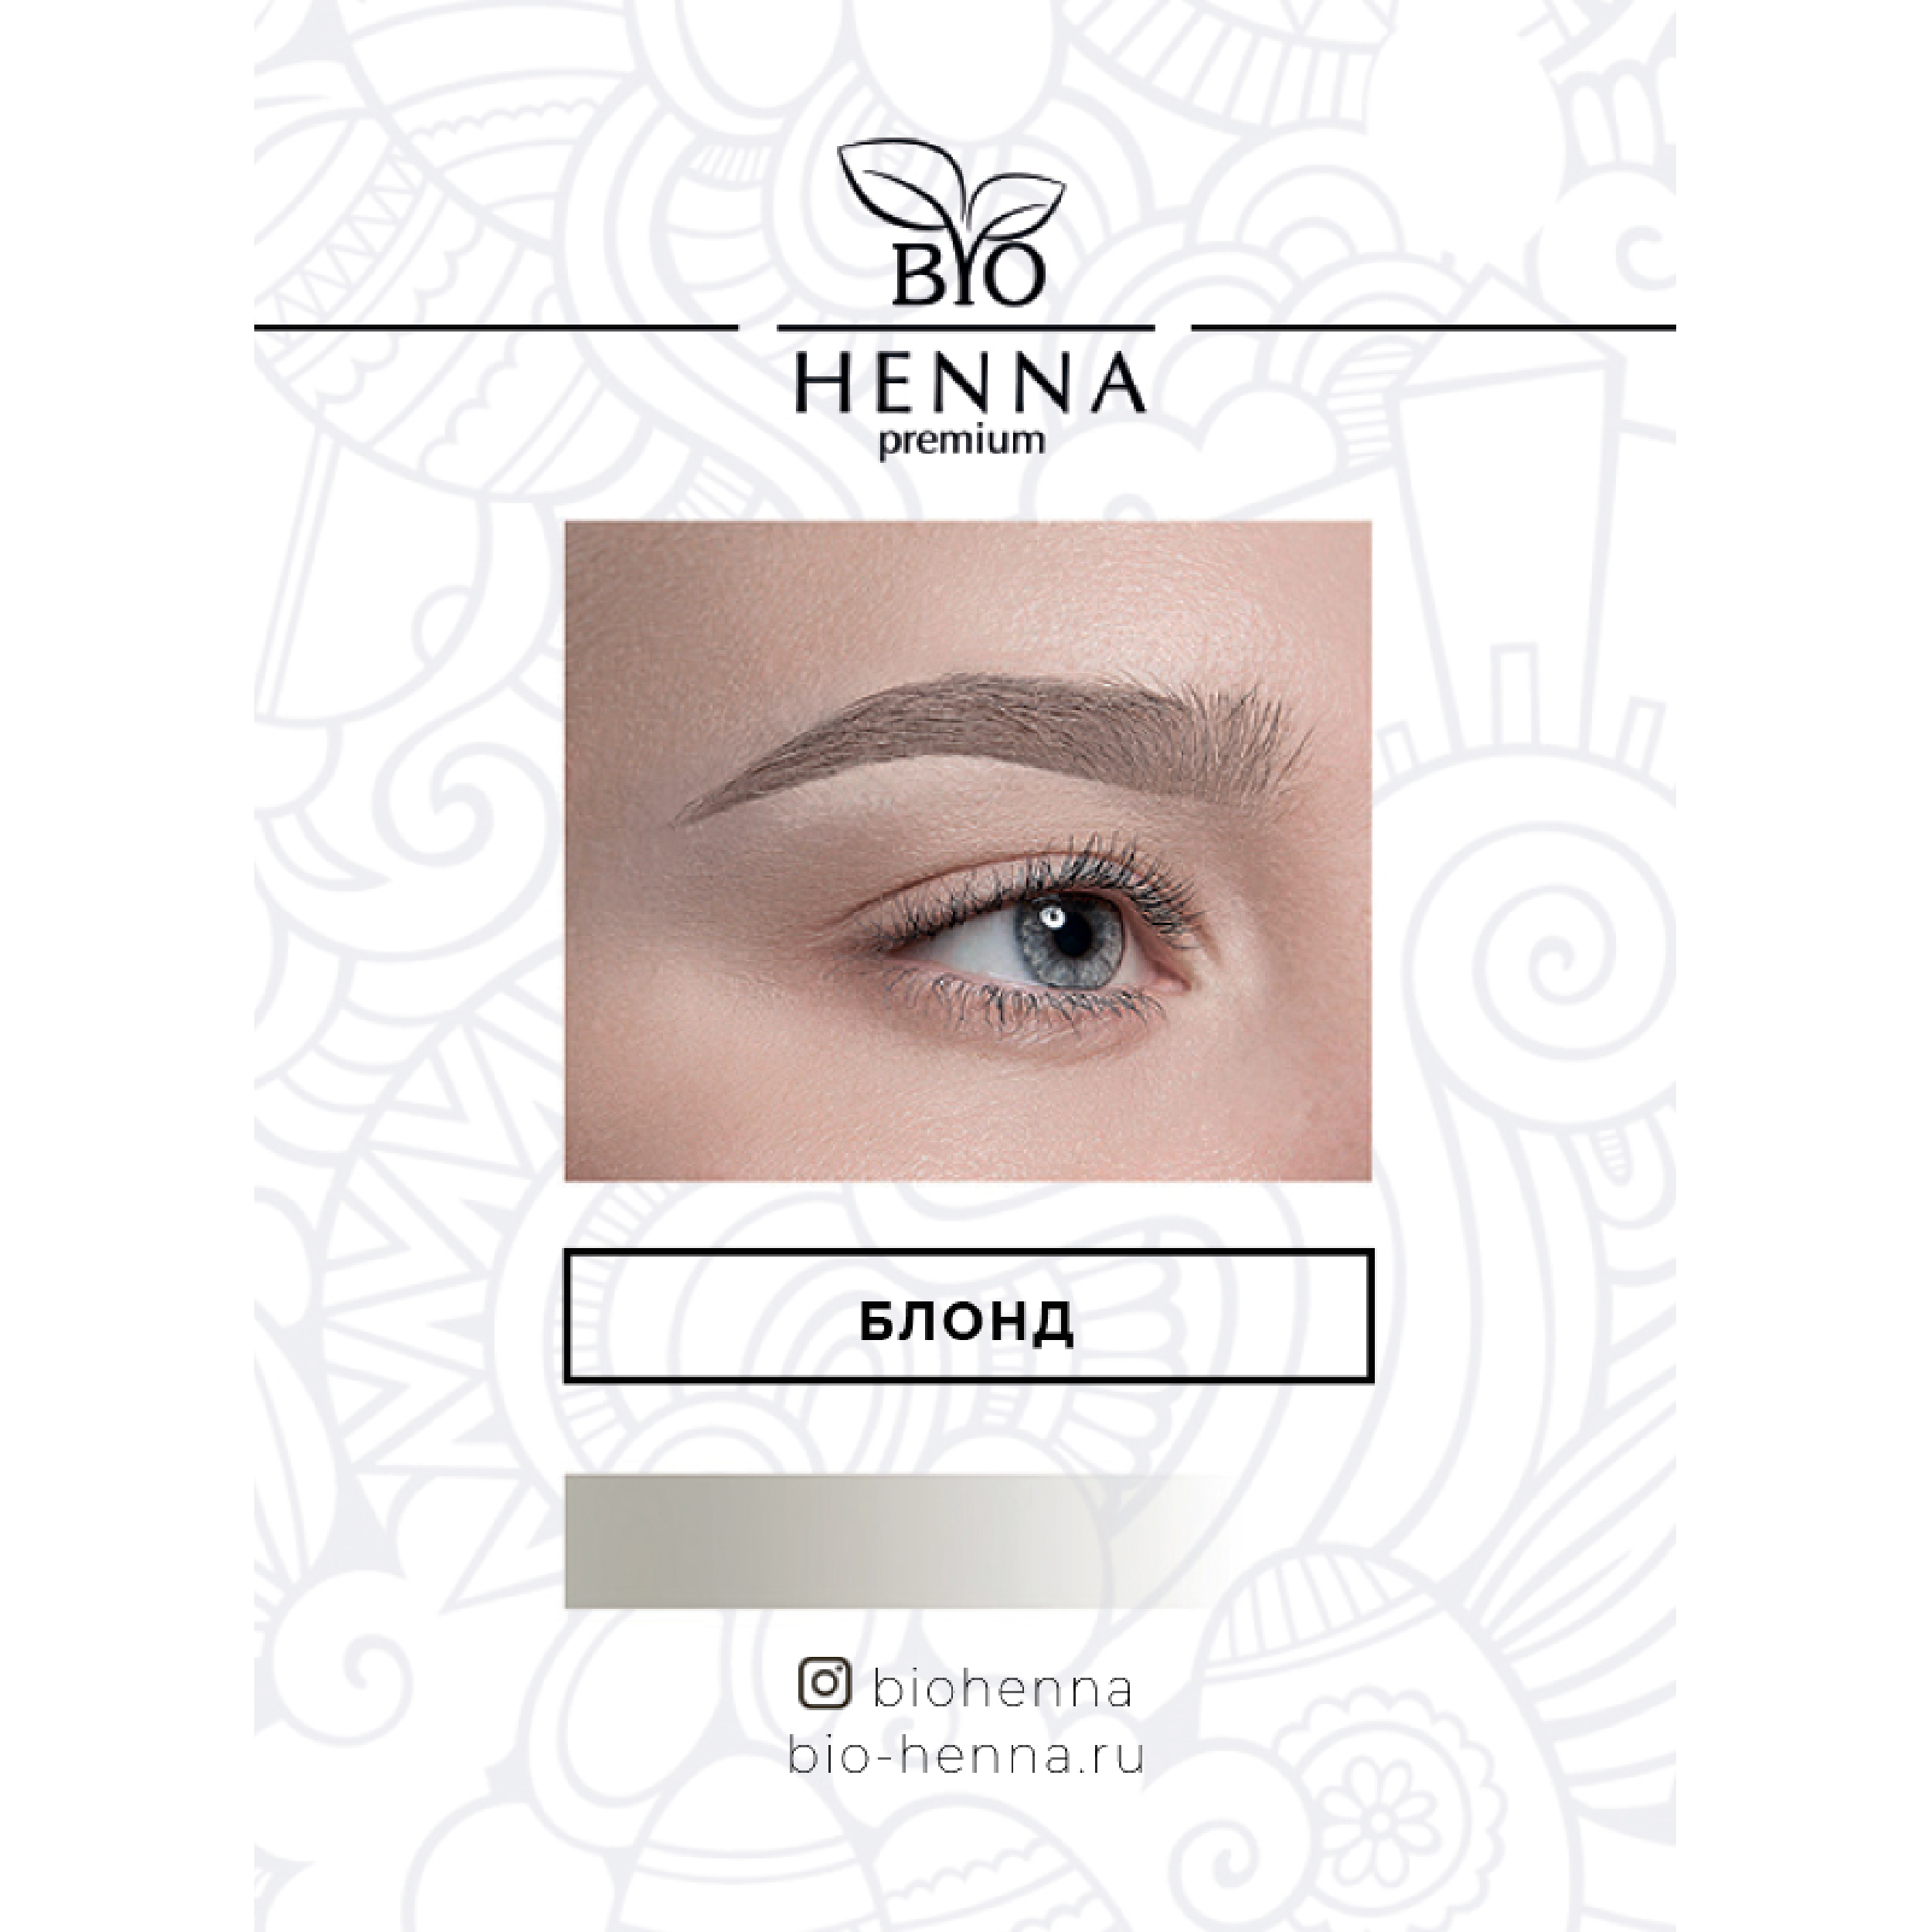 Хна Bio Henna в капсулах оттенок Блонд, 1 шт, 0,2 гр